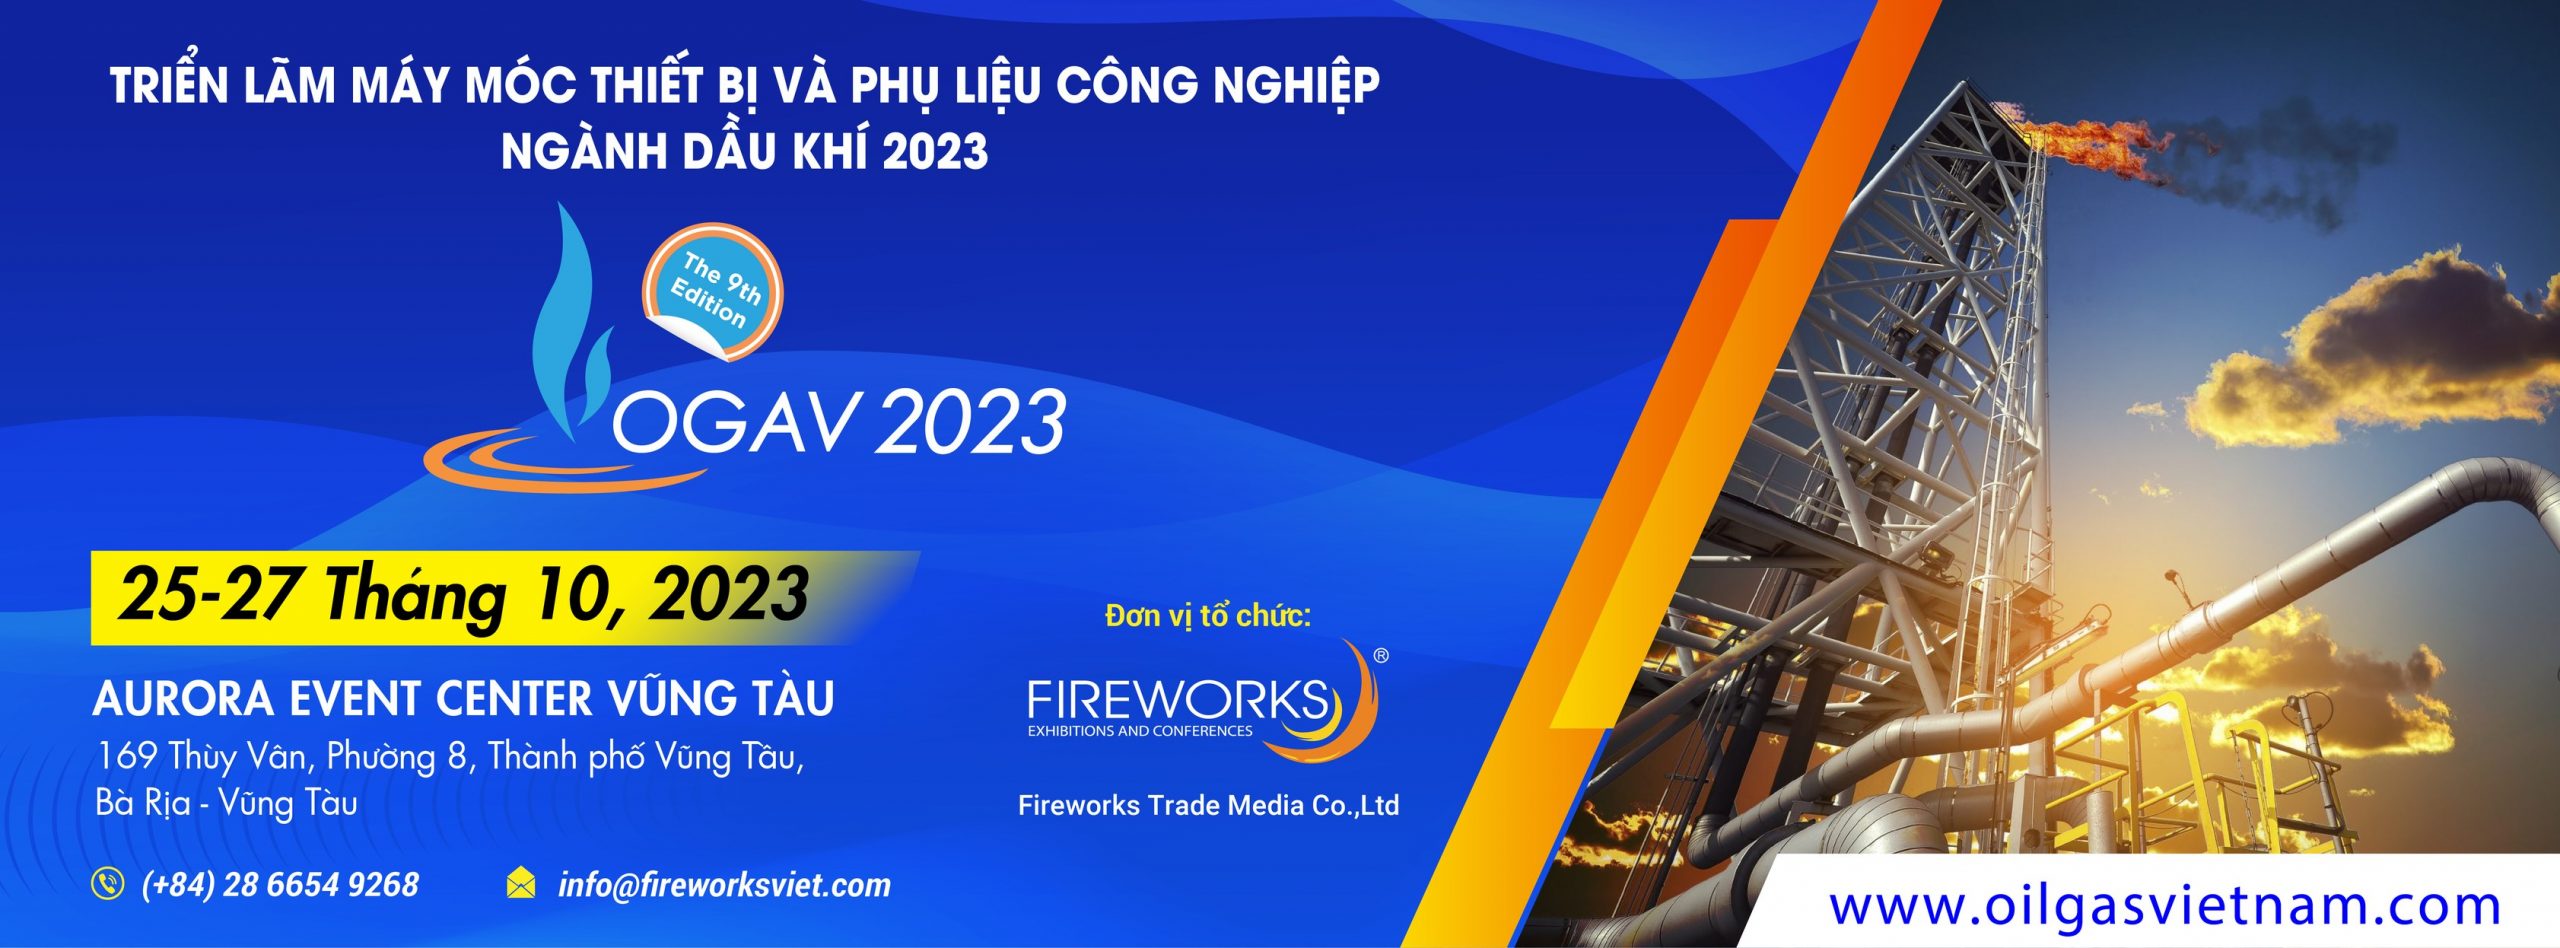 Oil & Gas Vietnam Expo 2023 – Triển lãm Dầu khí Việt Nam 2023